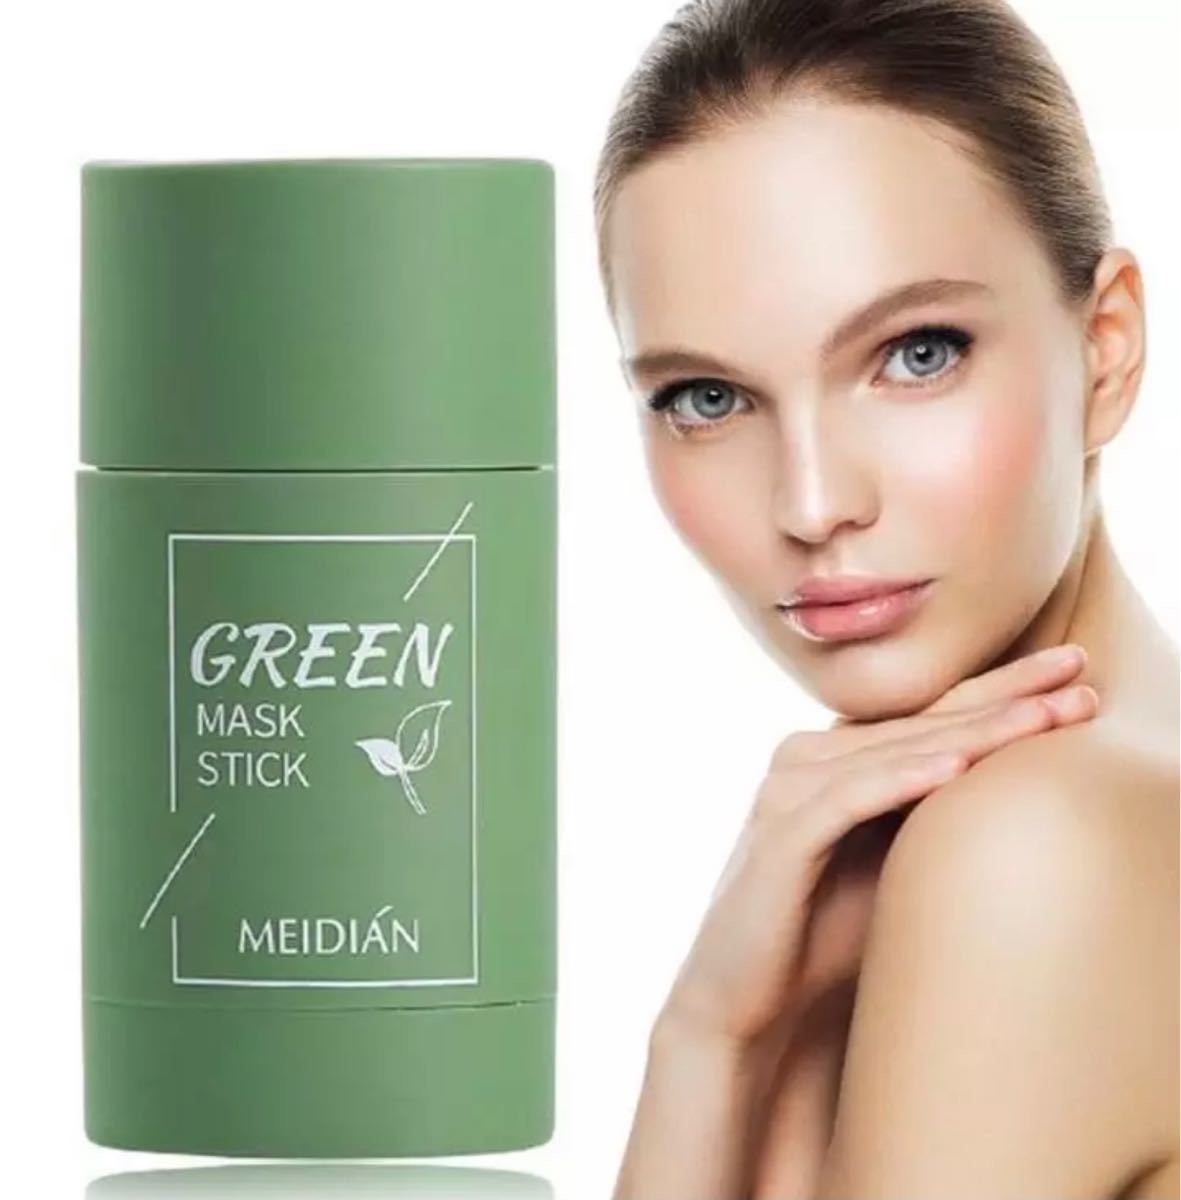 GREEN MASK STICK 5本 セット割引 green 毛穴ケア クレンジングマスク フェイスパック 緑茶浄化 クレイスティックマスク 40g*5本